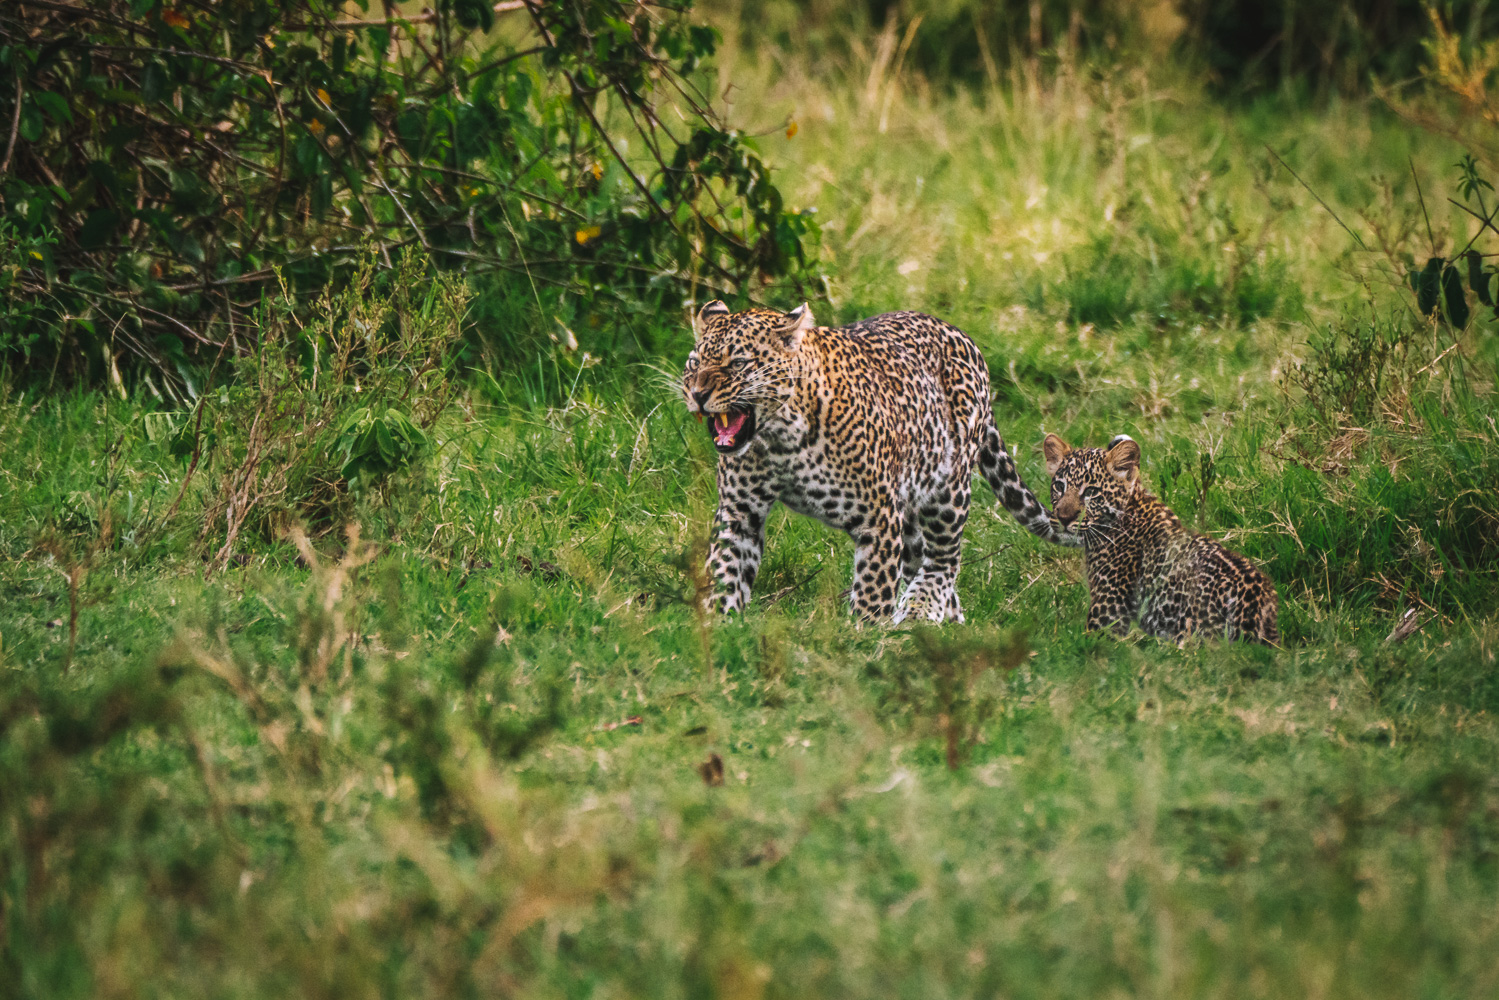 Mom and cub, kenya safari